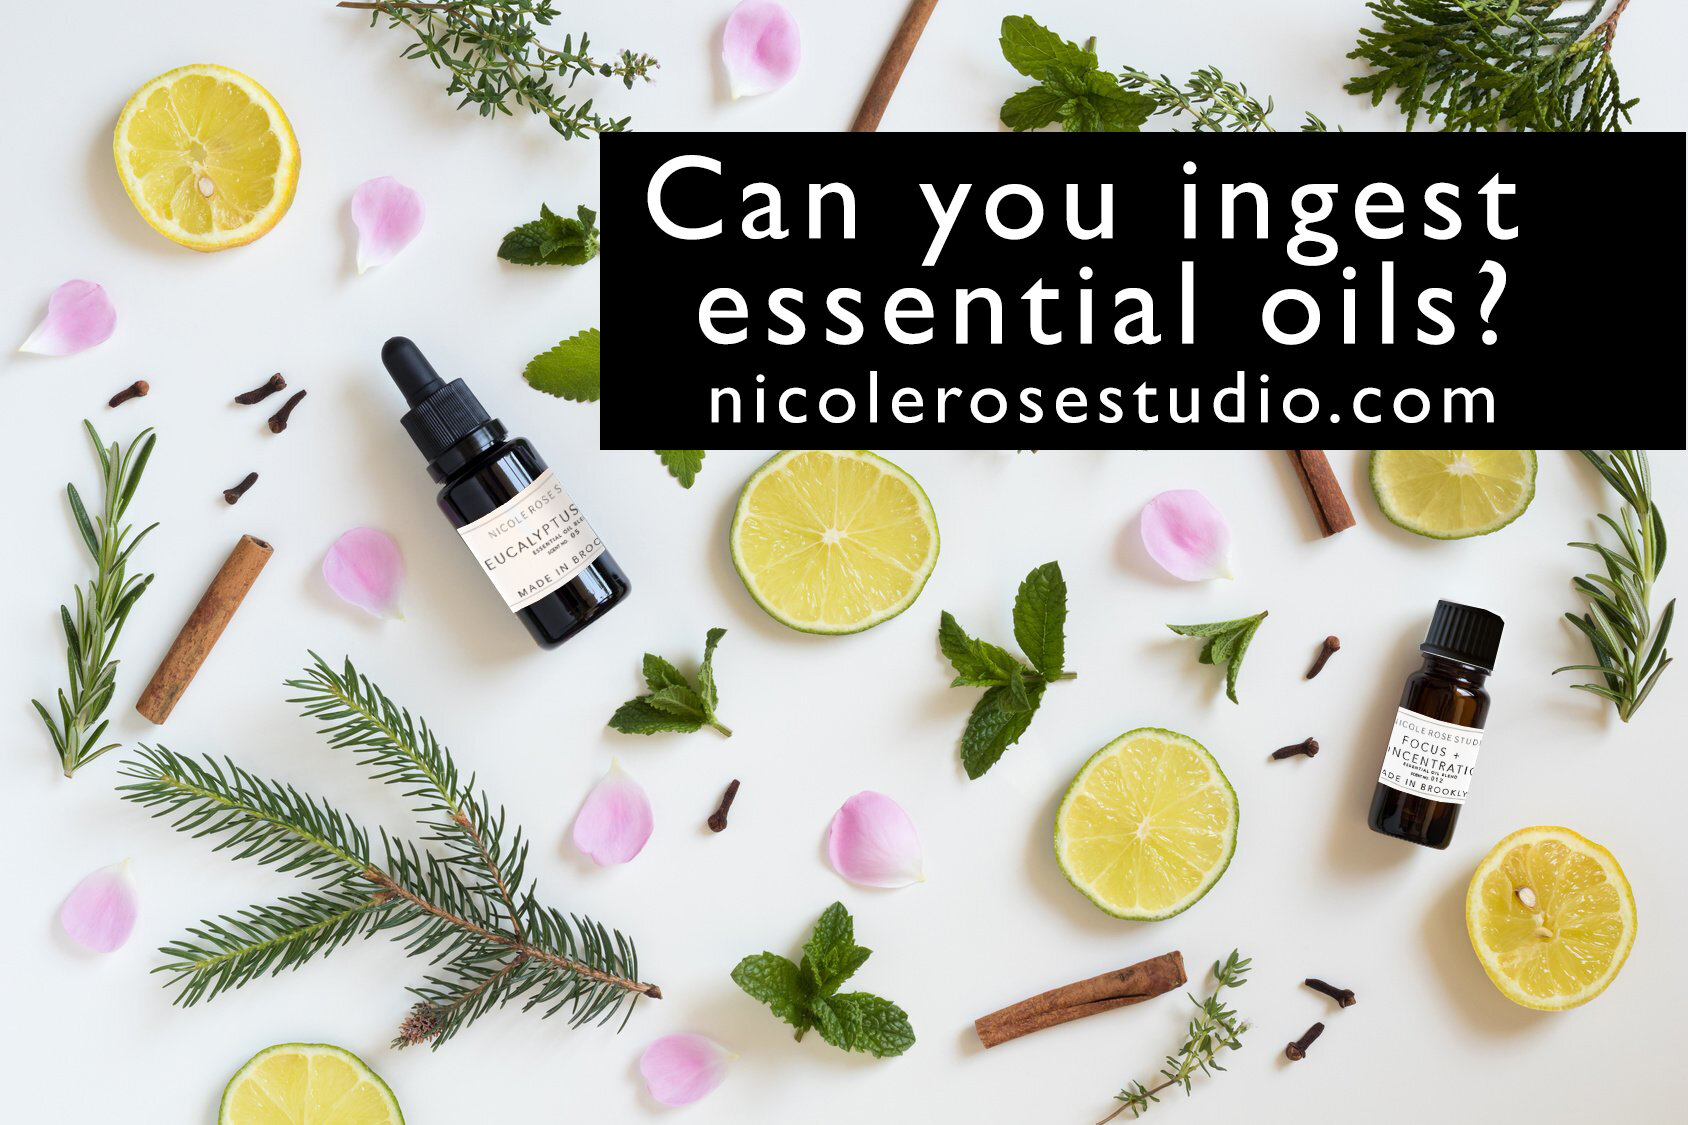 Deep Sleep Essential Oil — Nicole Rose Studio